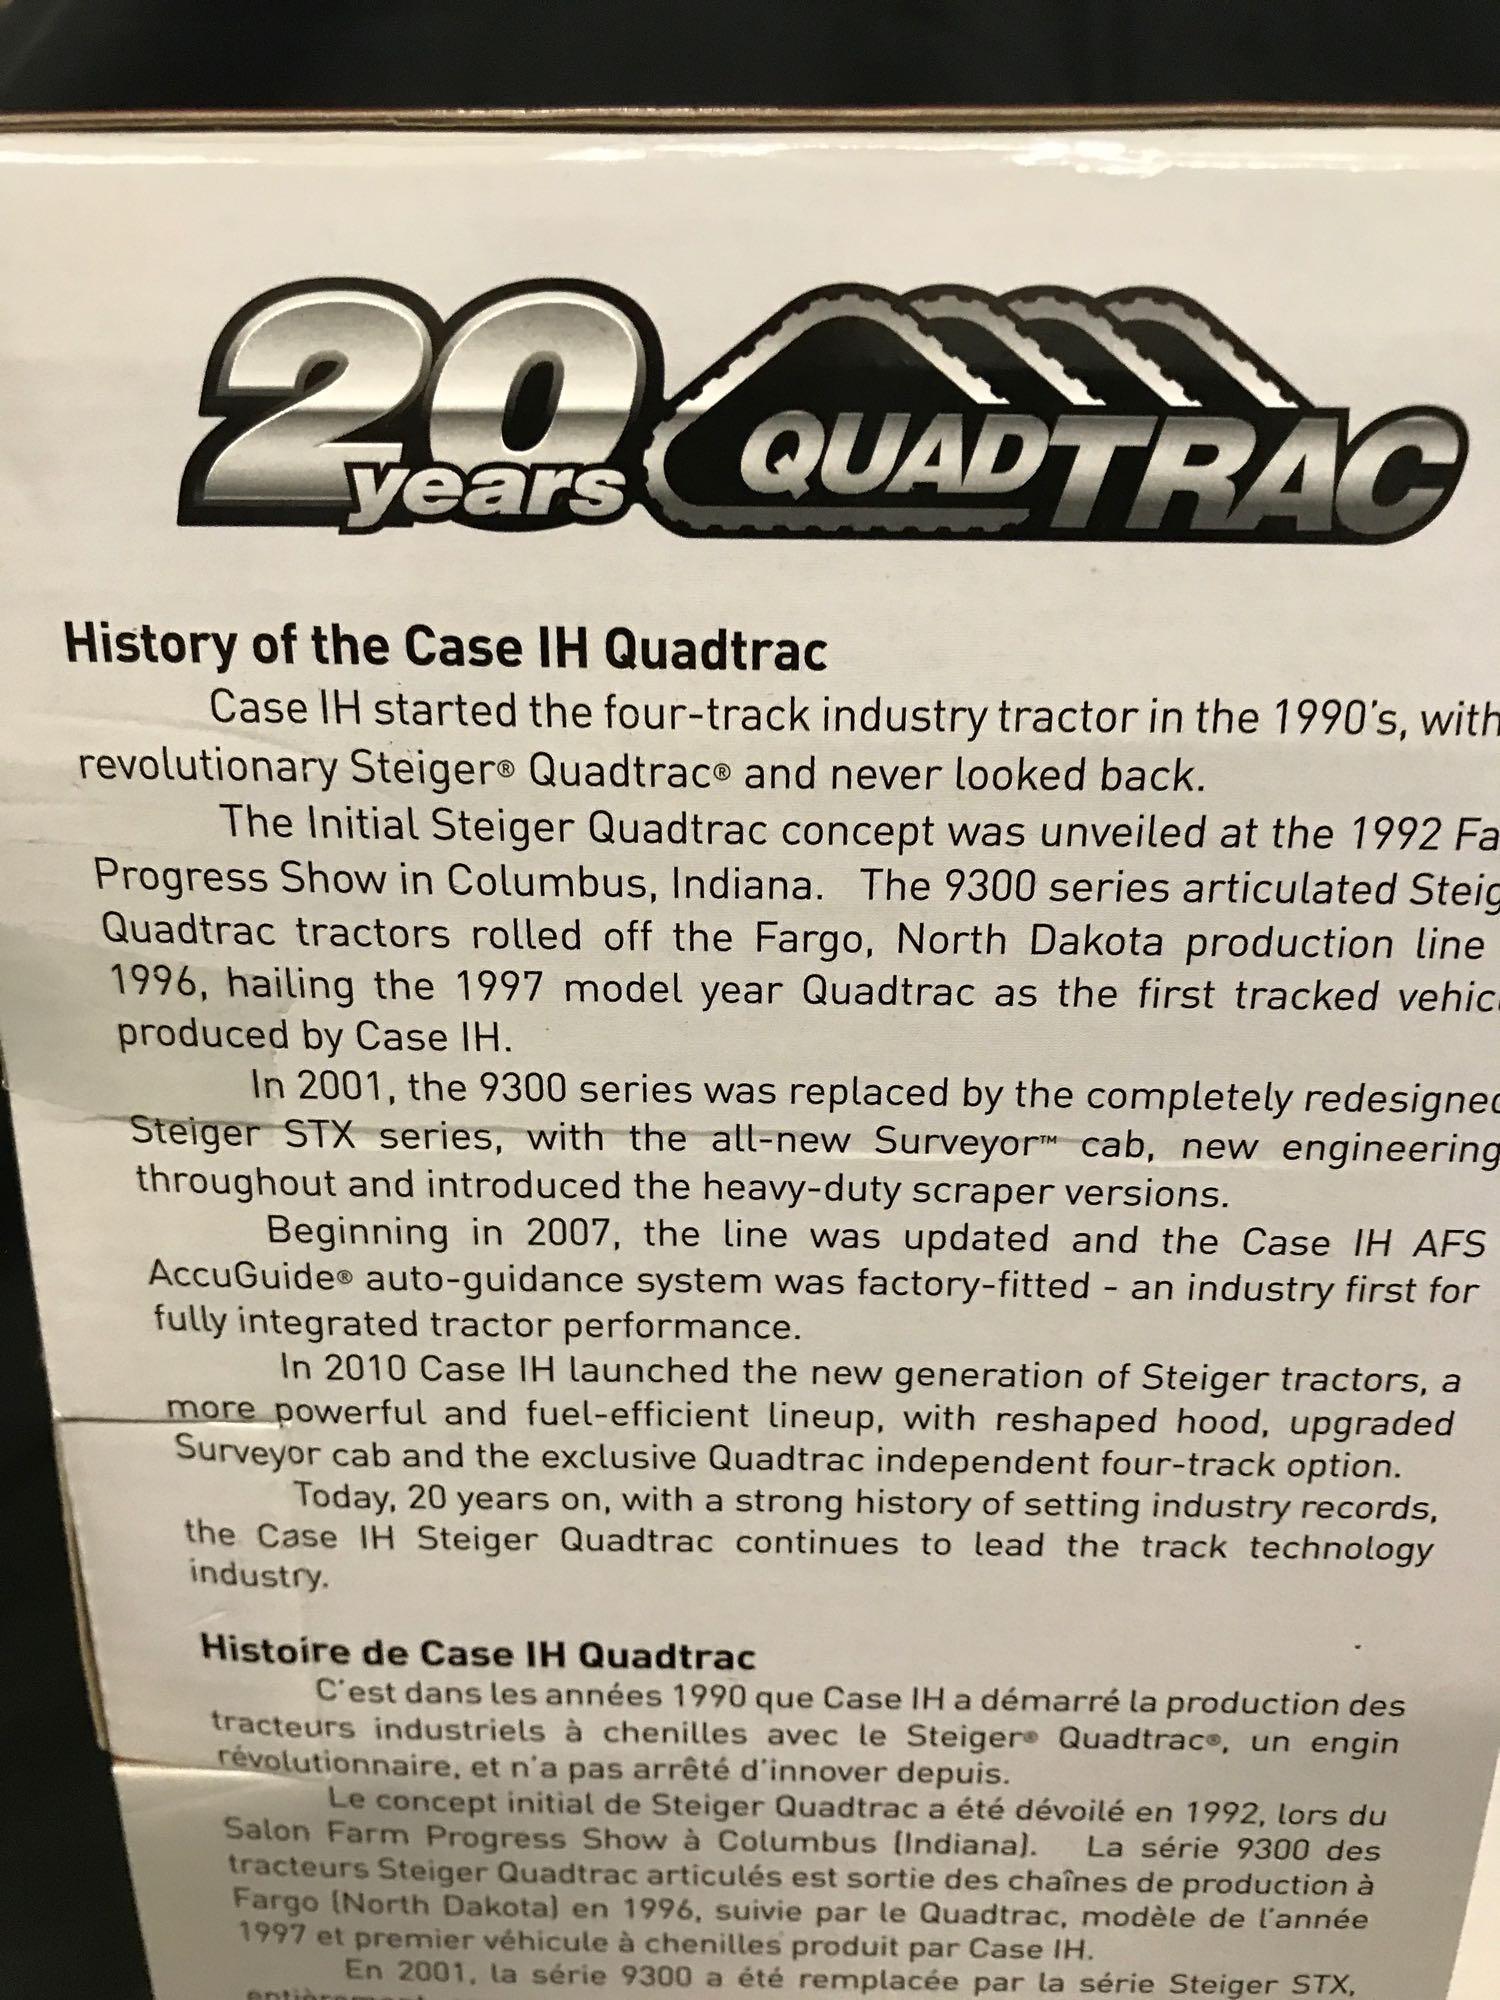 CaseIH Steiger 620 Quadtrac "20 Years of Quad Trac"